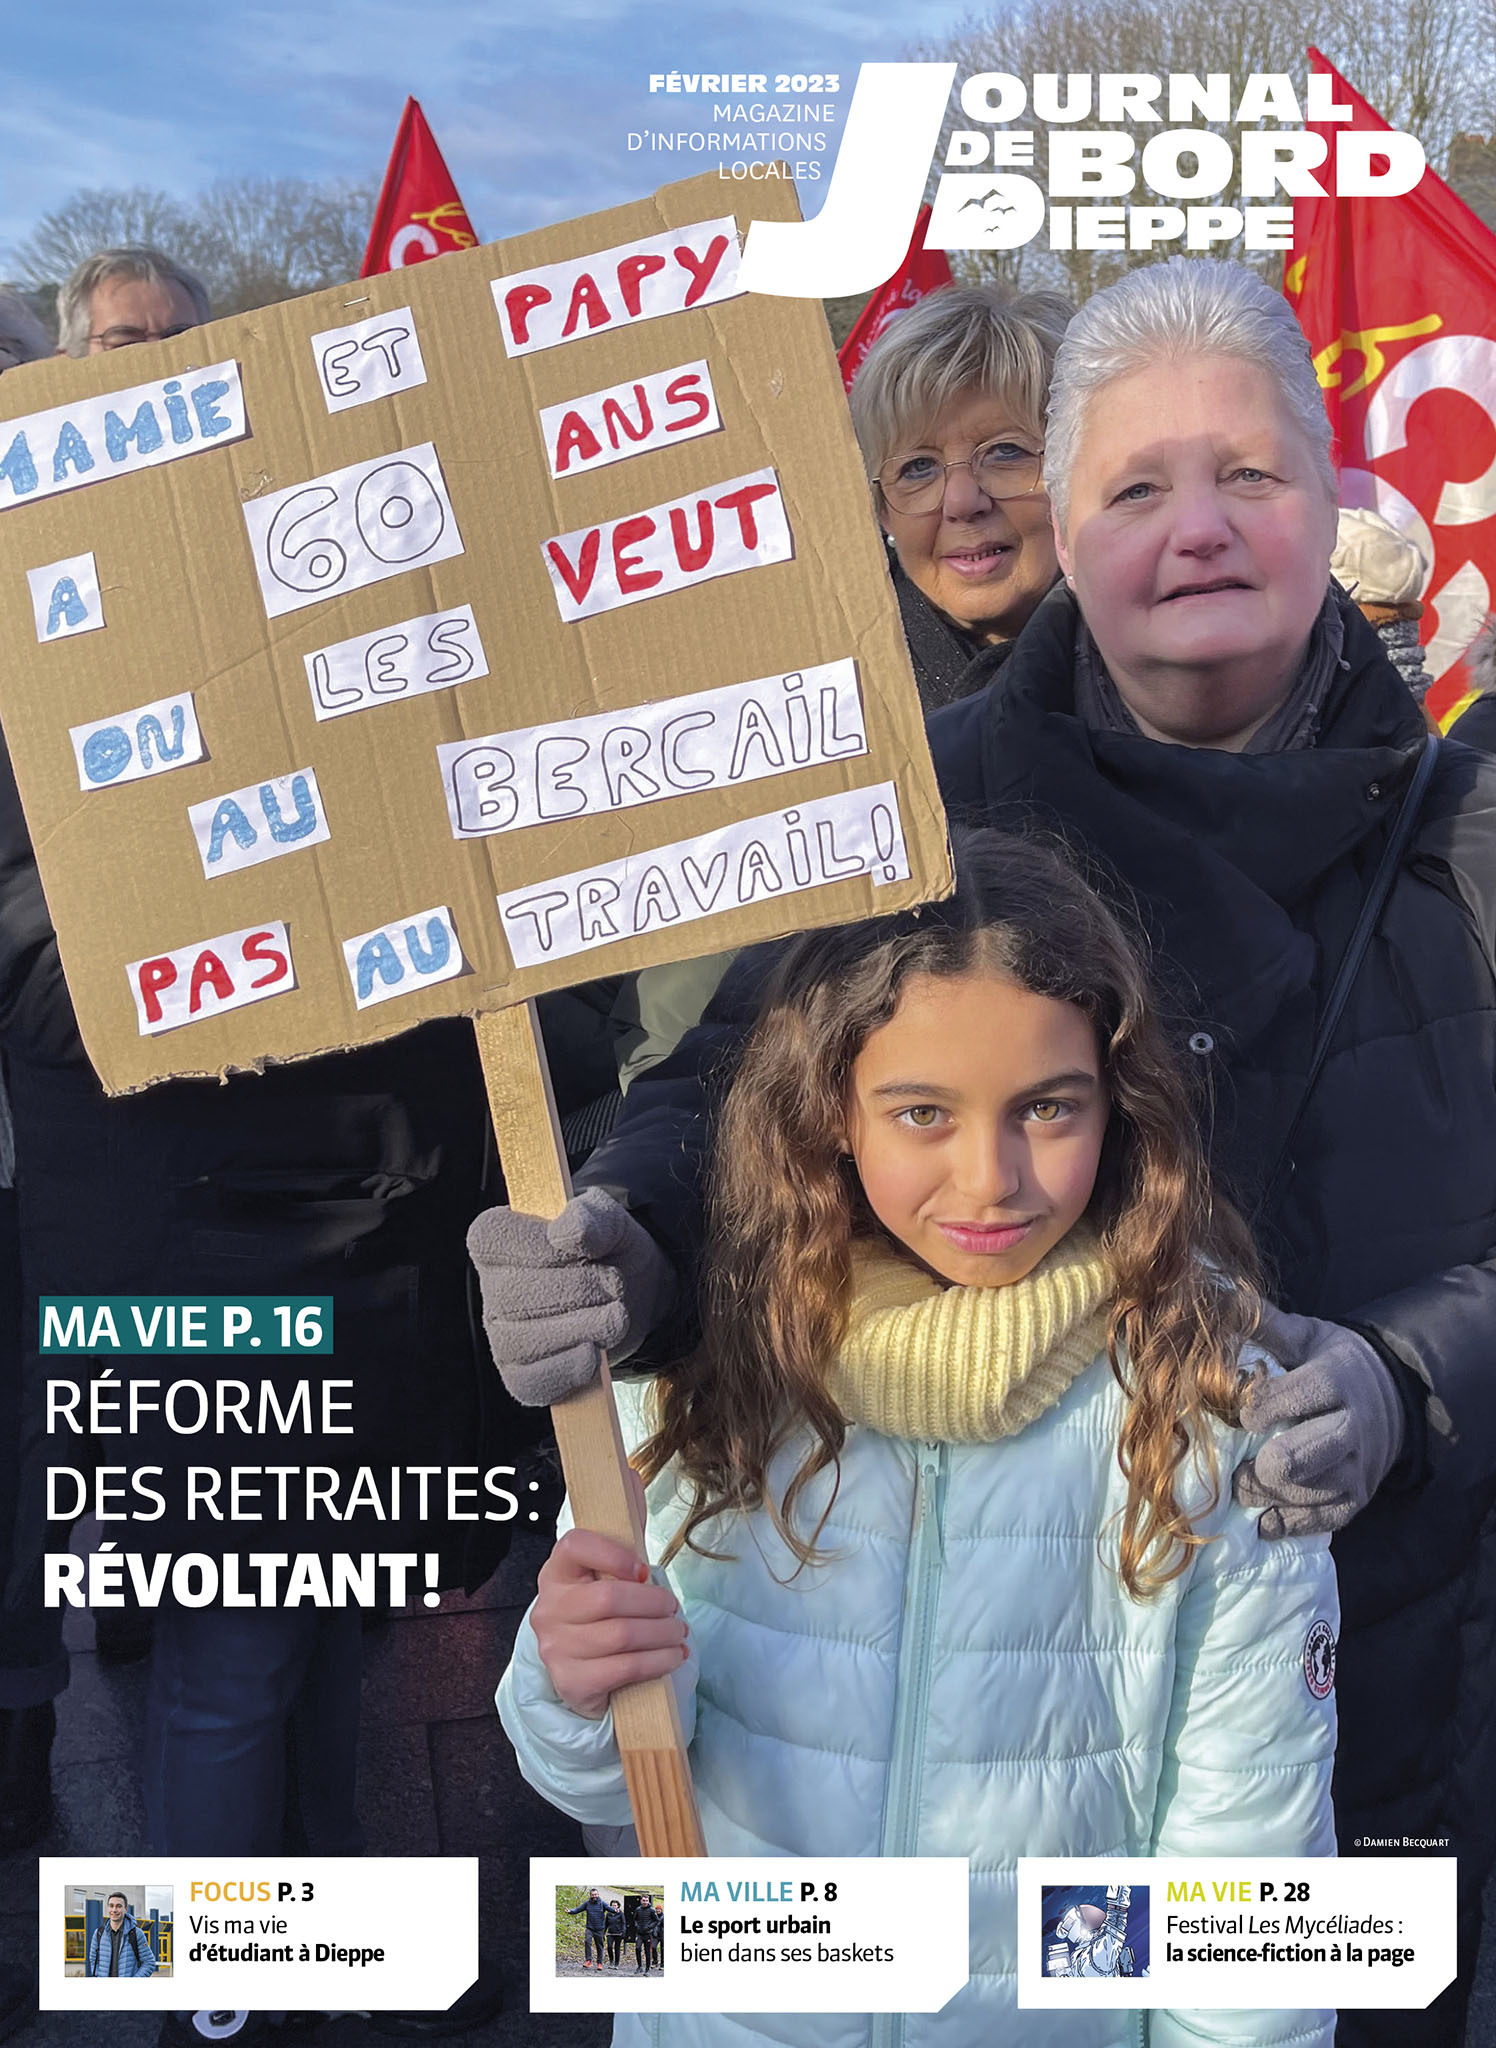 Blog Unicef Val de Marne: Pour vos voeux, pensez aux cartes Unicef